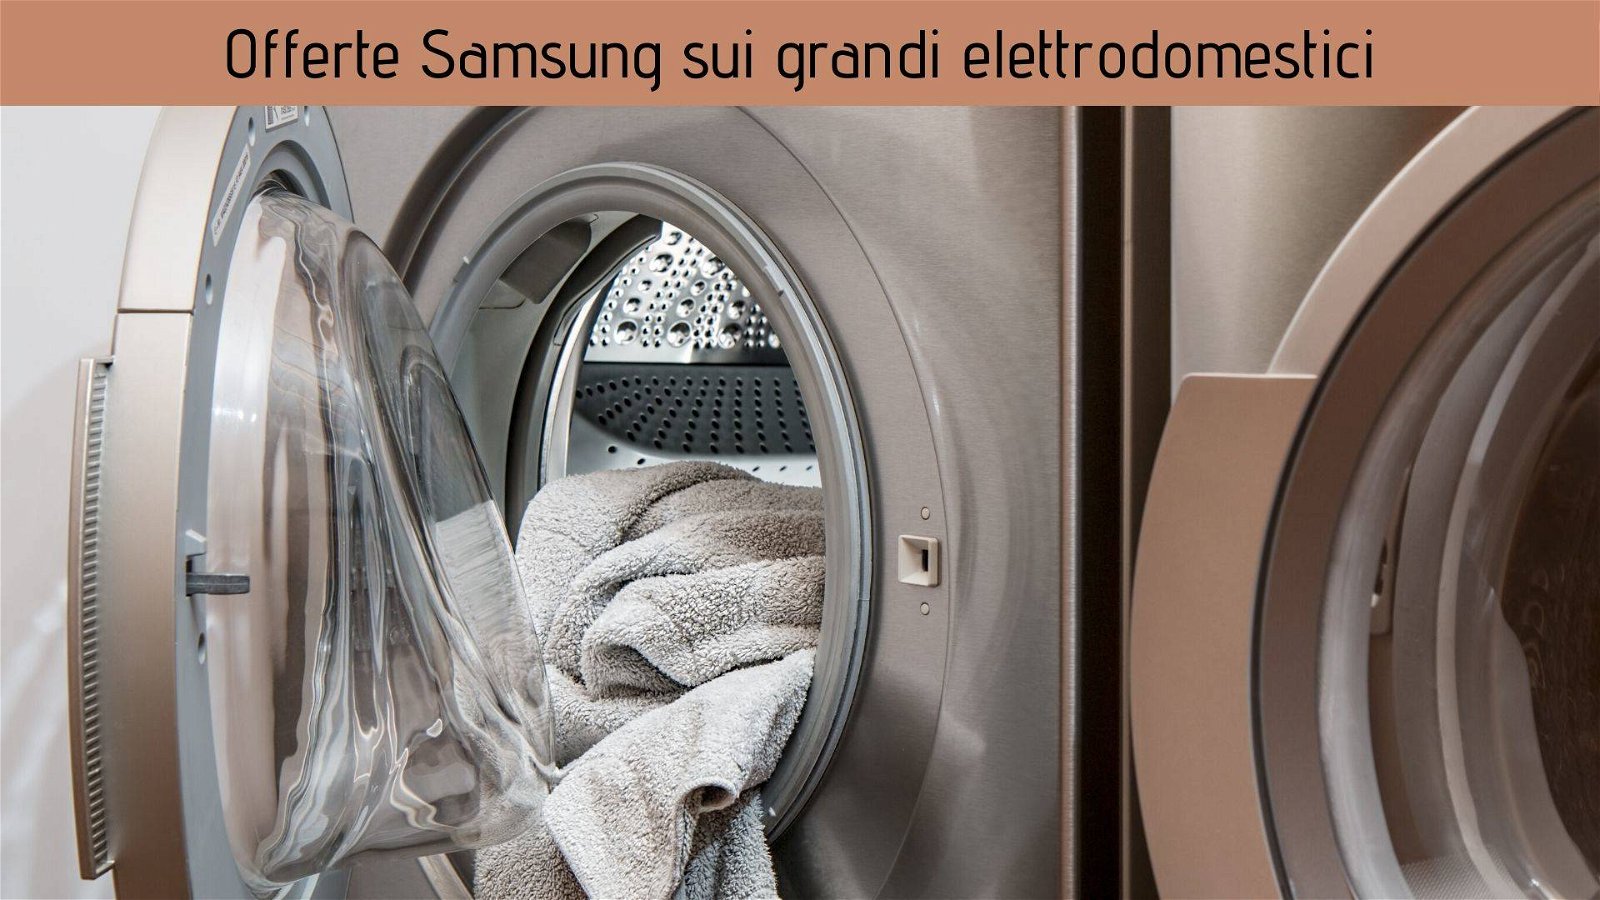 Immagine di I grandi elettrodomestici Samsung in offerta su Amazon!